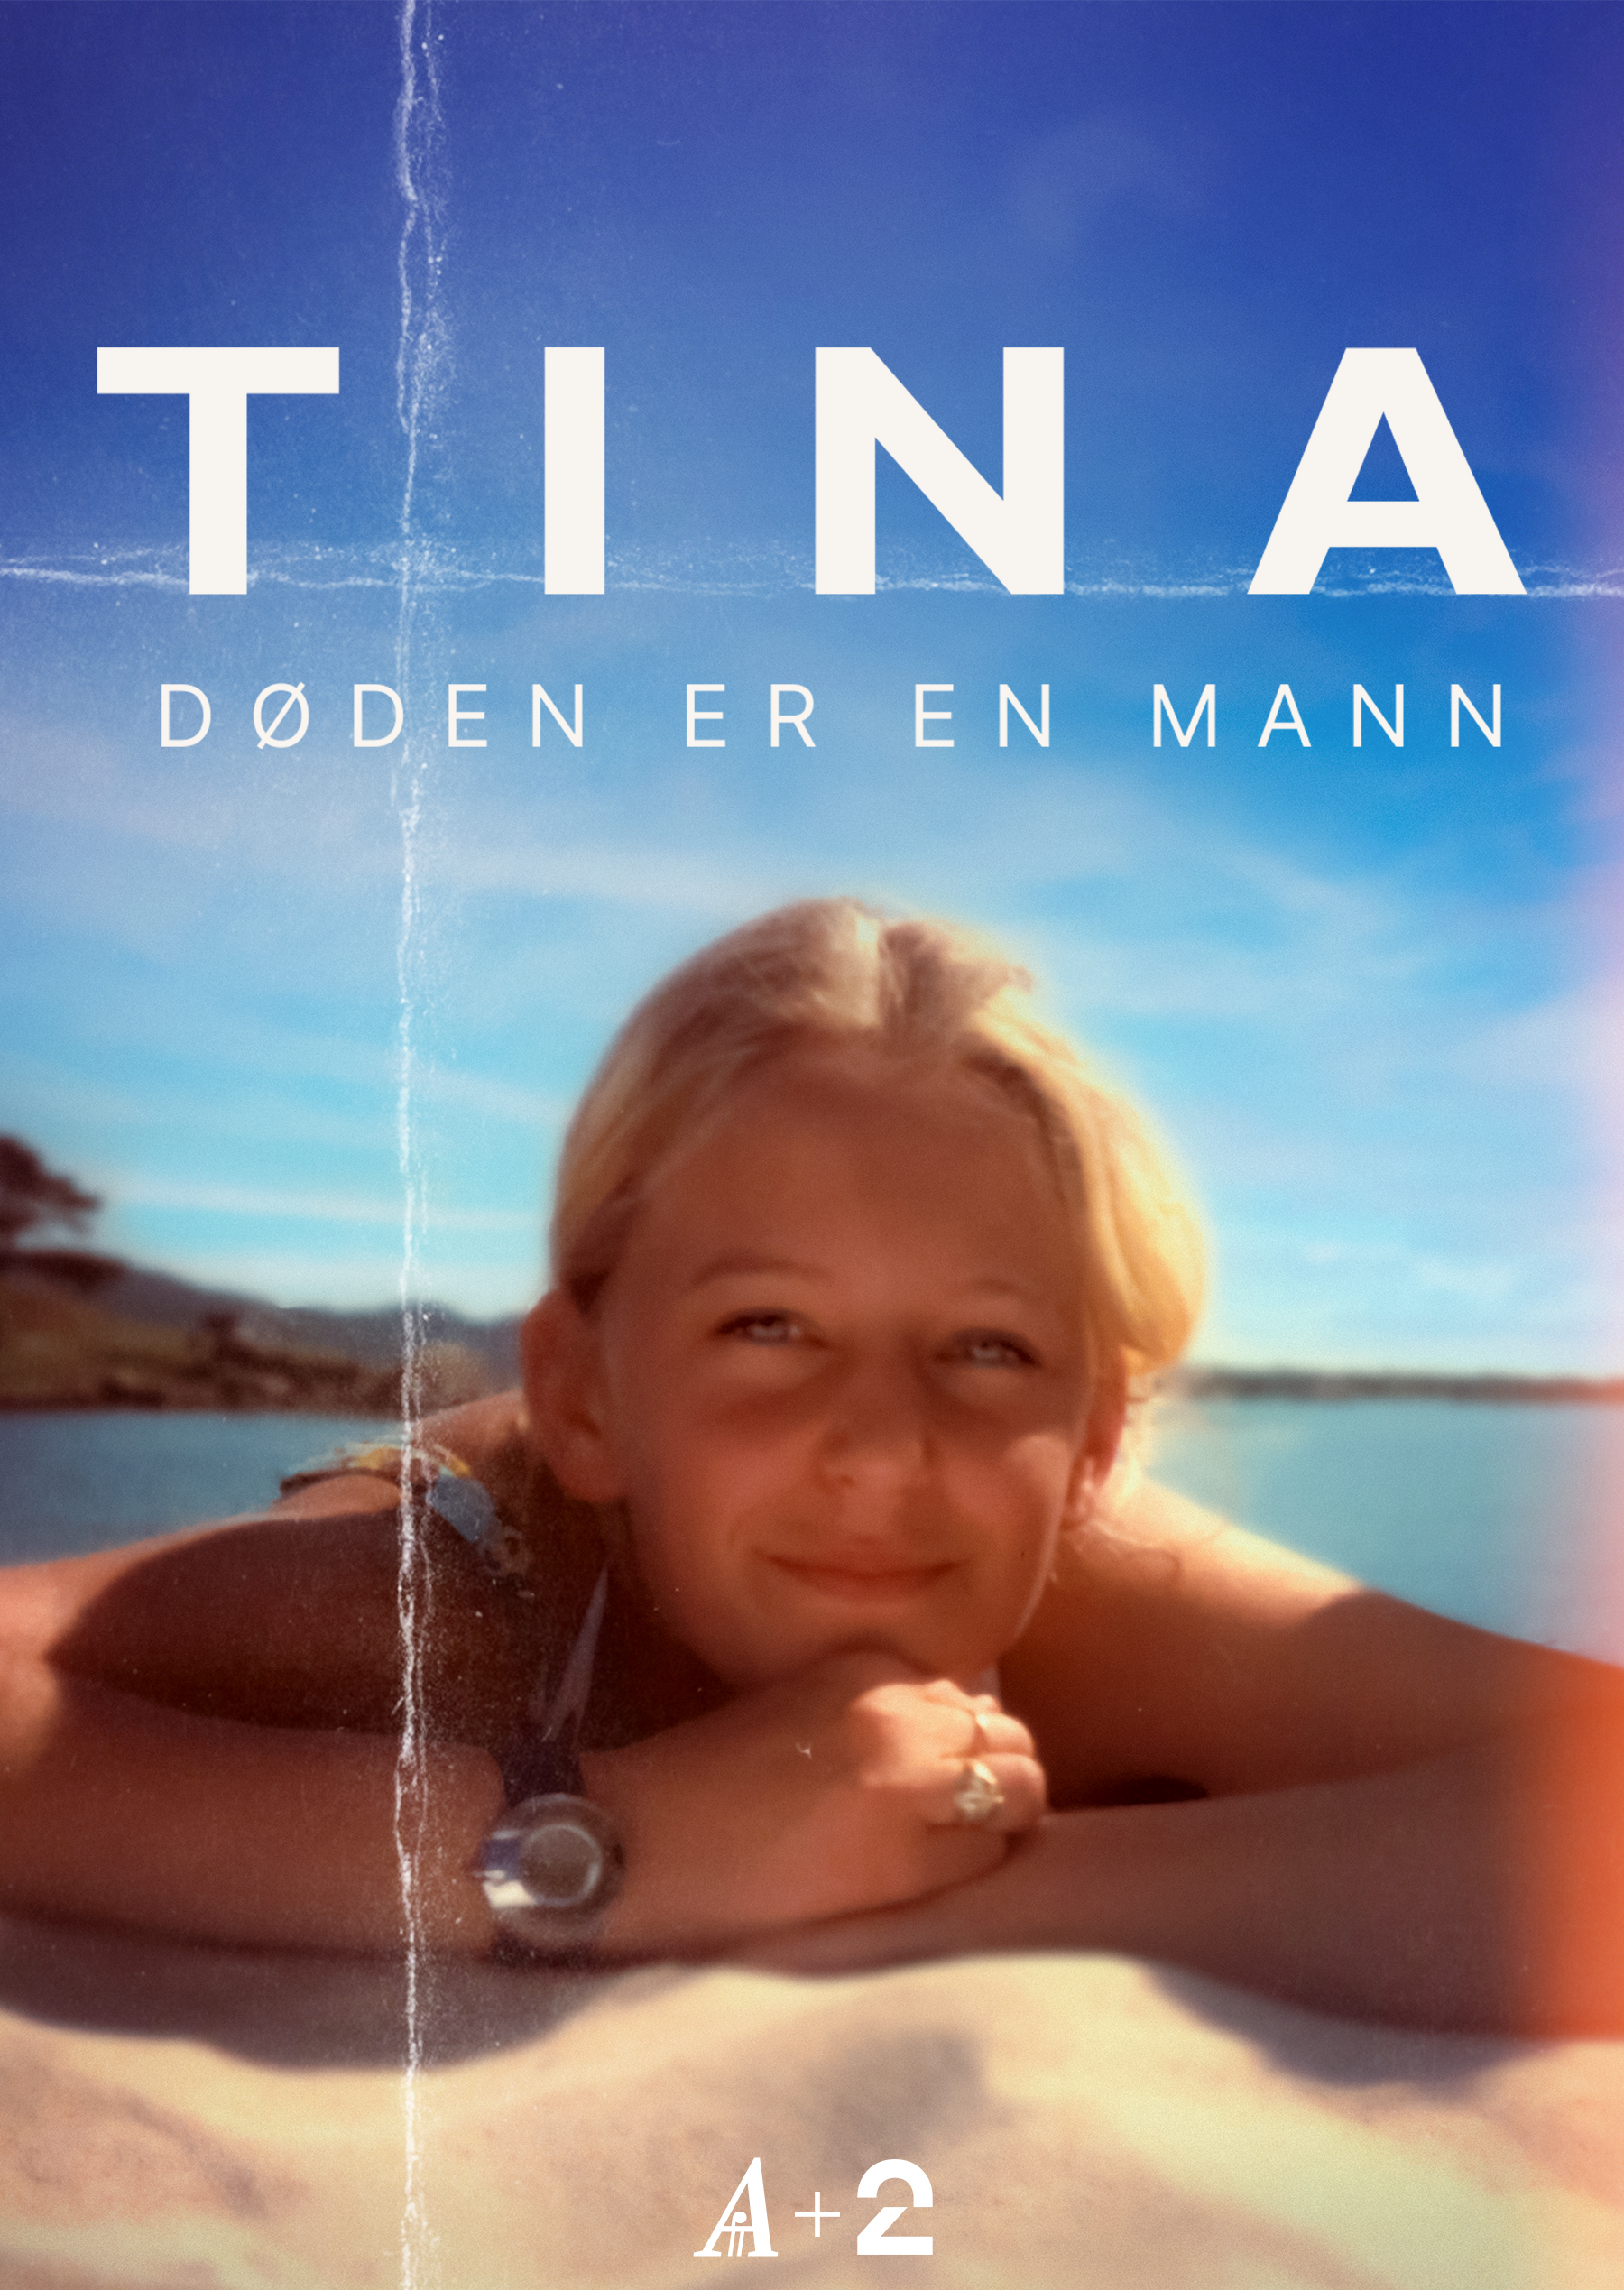 undefined | Drapet på Tina Jørgensen - Døden er en mann